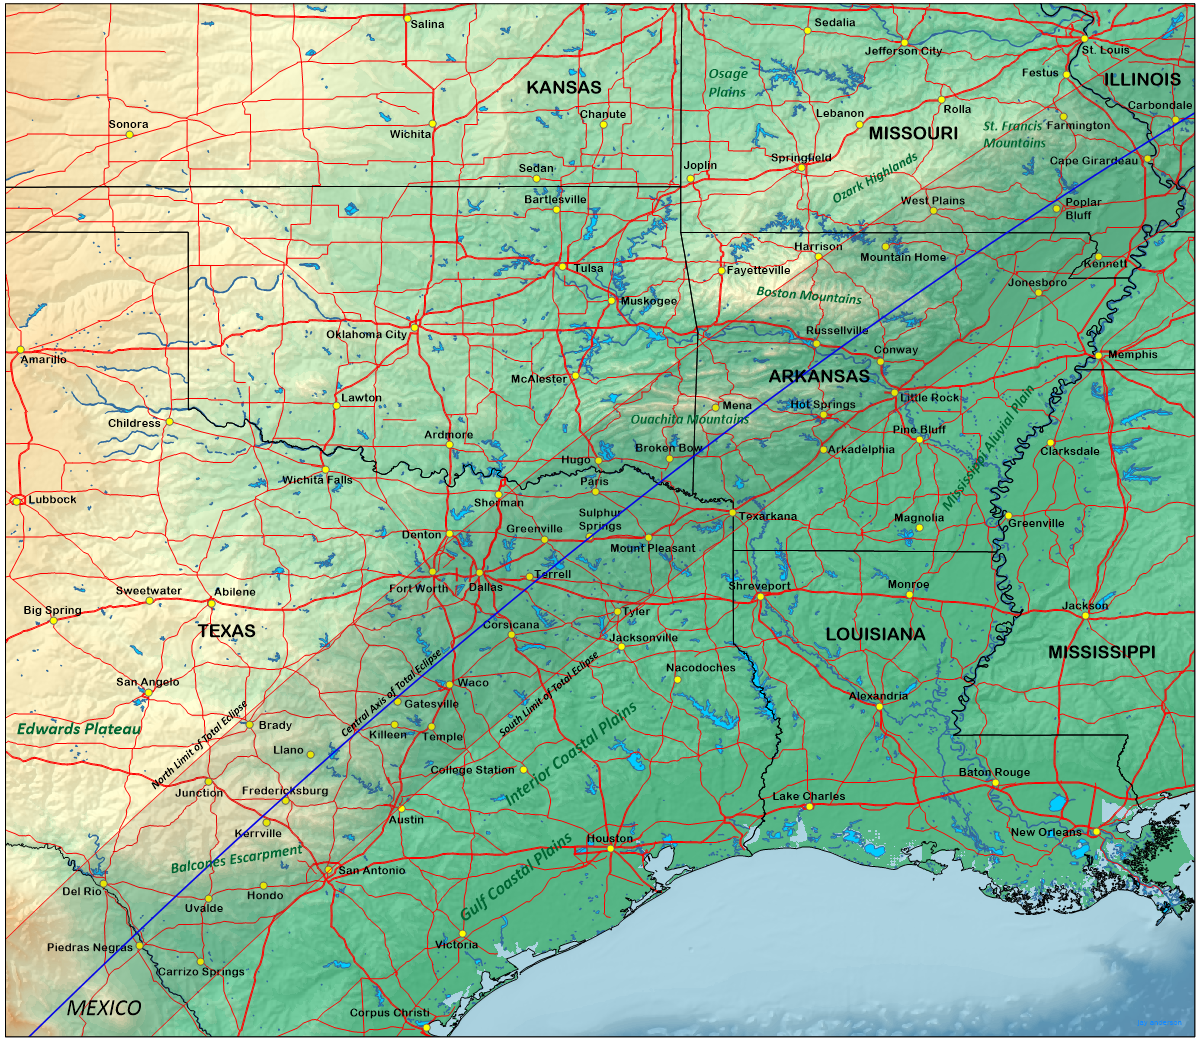 Peta topografi Amerika Serikat dan jalur gerhana total yang akan terjadi bayangan bulan pada 8 April.